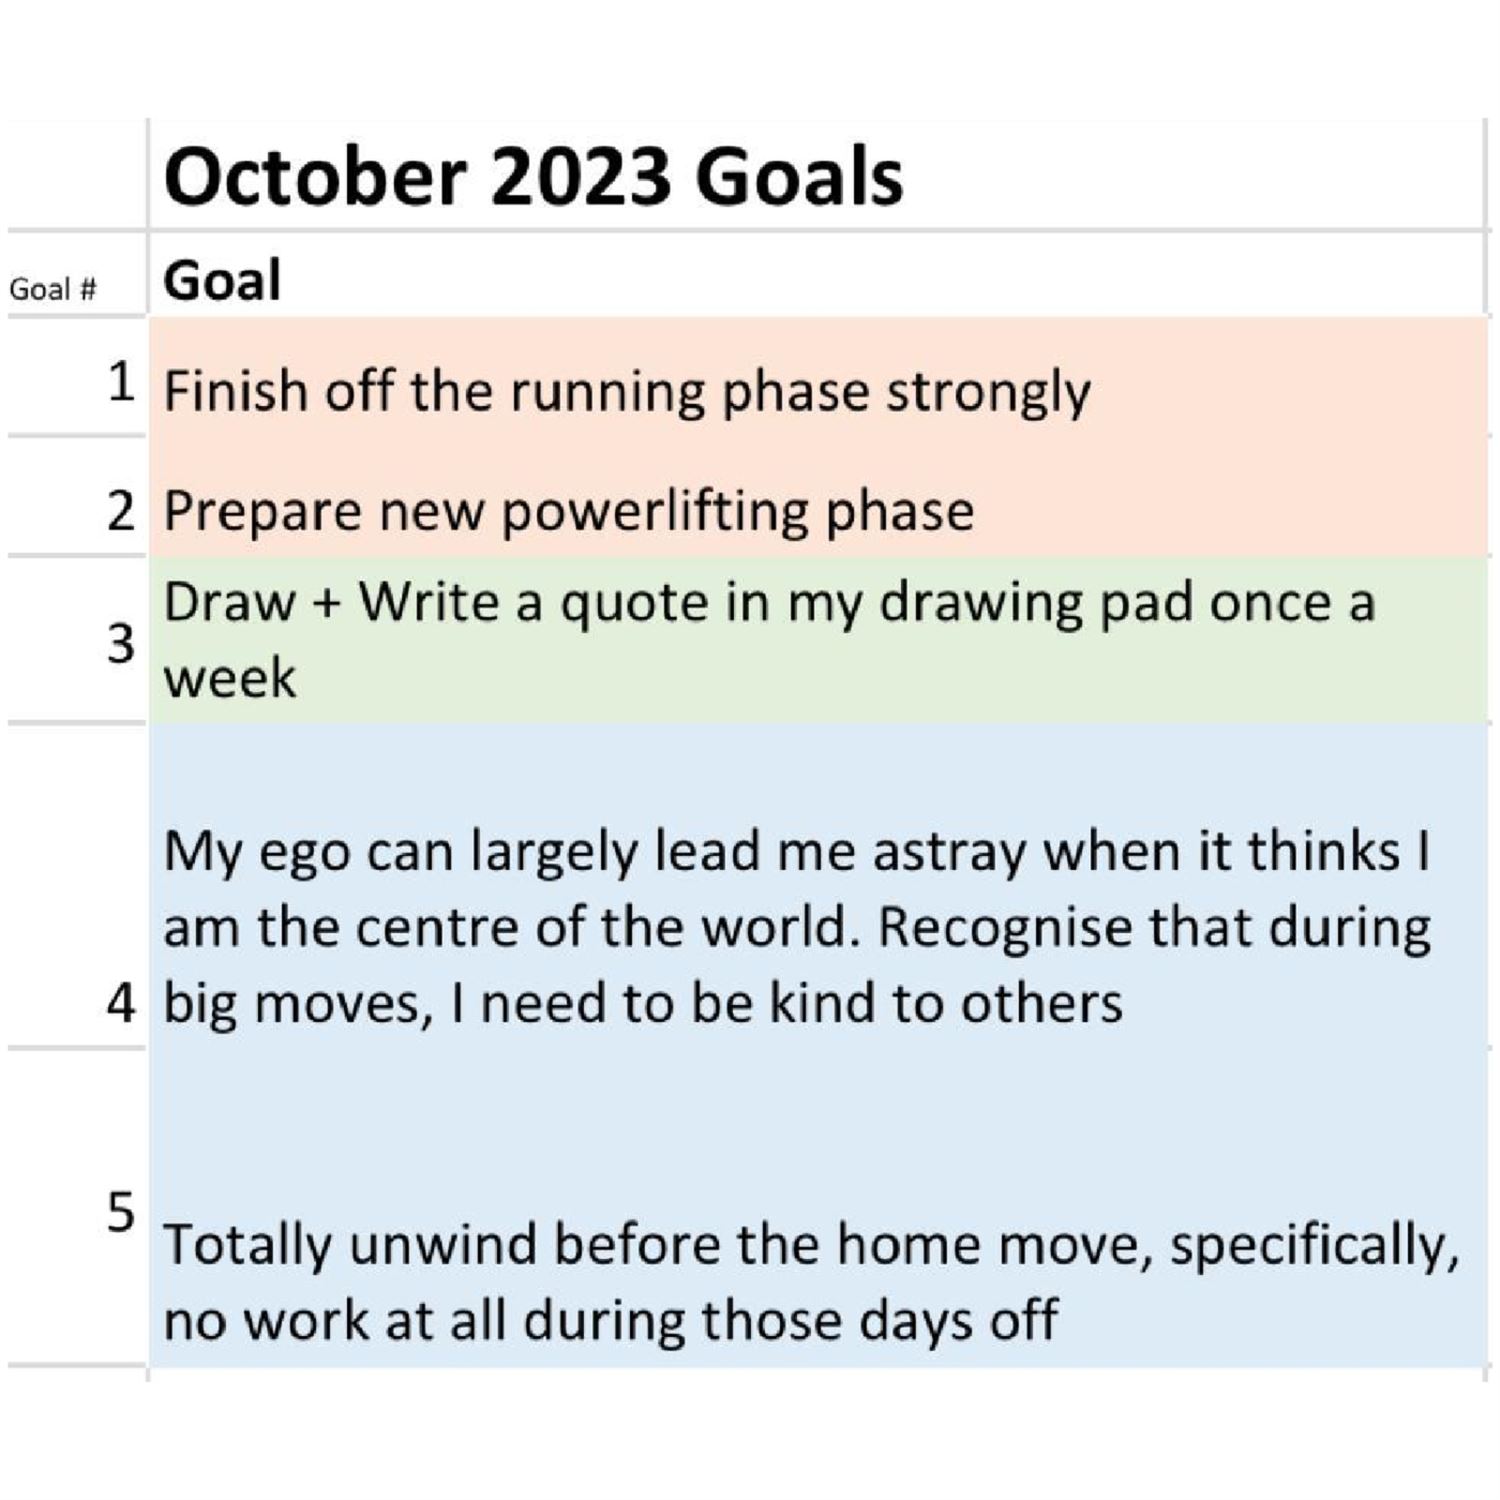 Juan's October 2023 goals